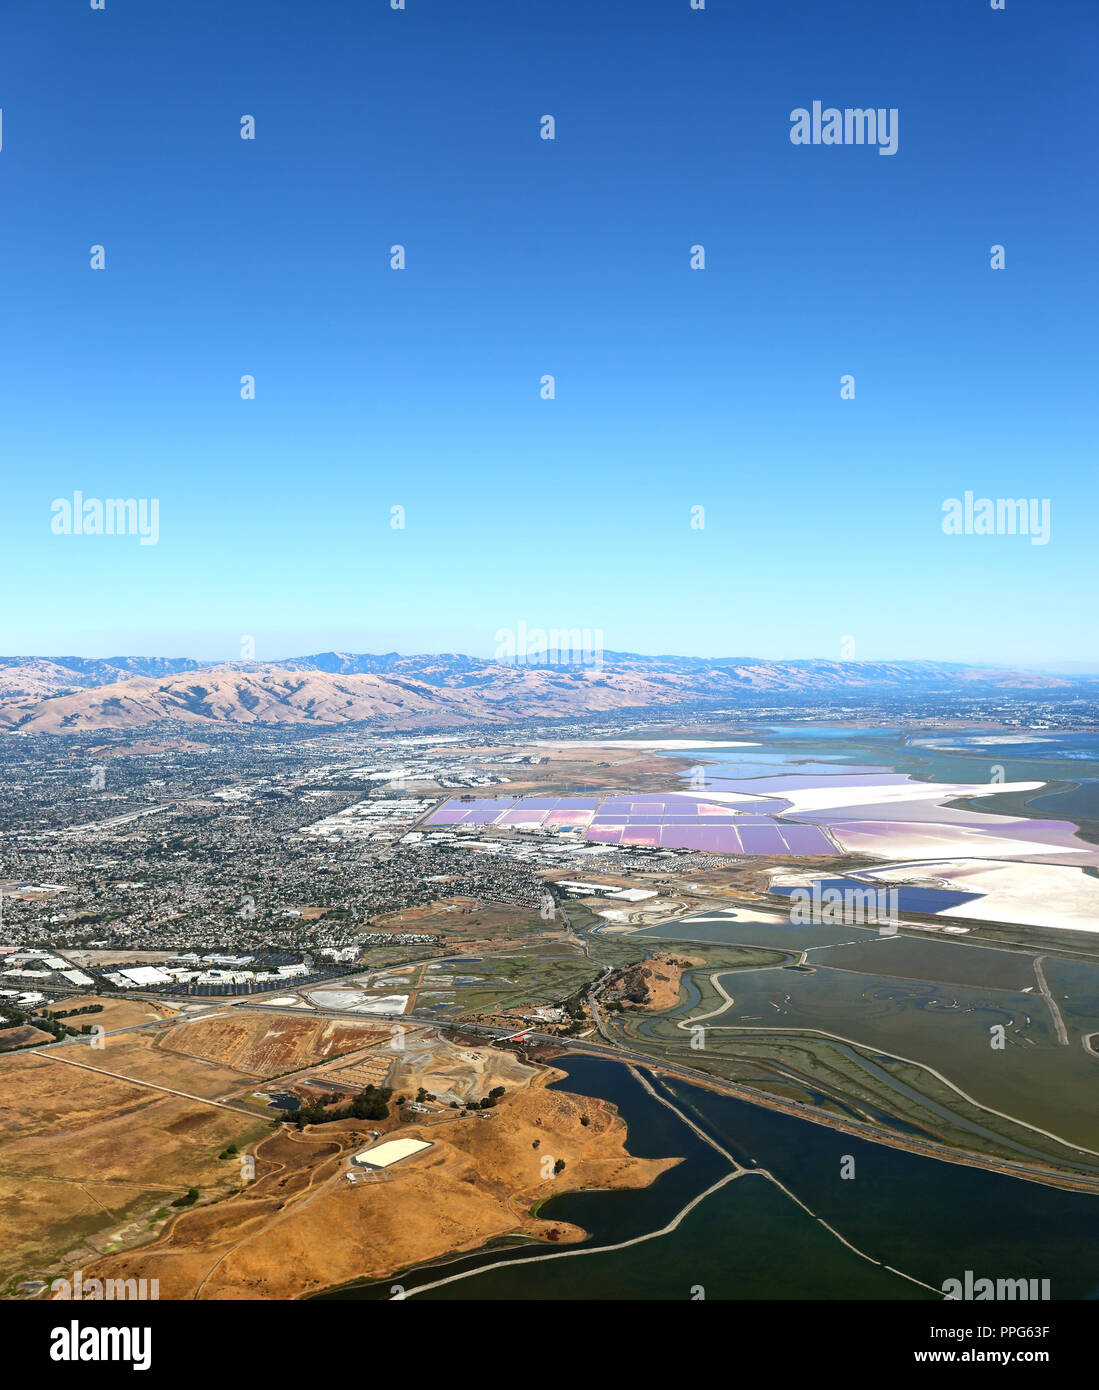 San Francisco Bay Area: Vista aérea del humedal pantanos en el área de South Bay, con el colorido de las lagunas saladas en la distancia. Foto de stock